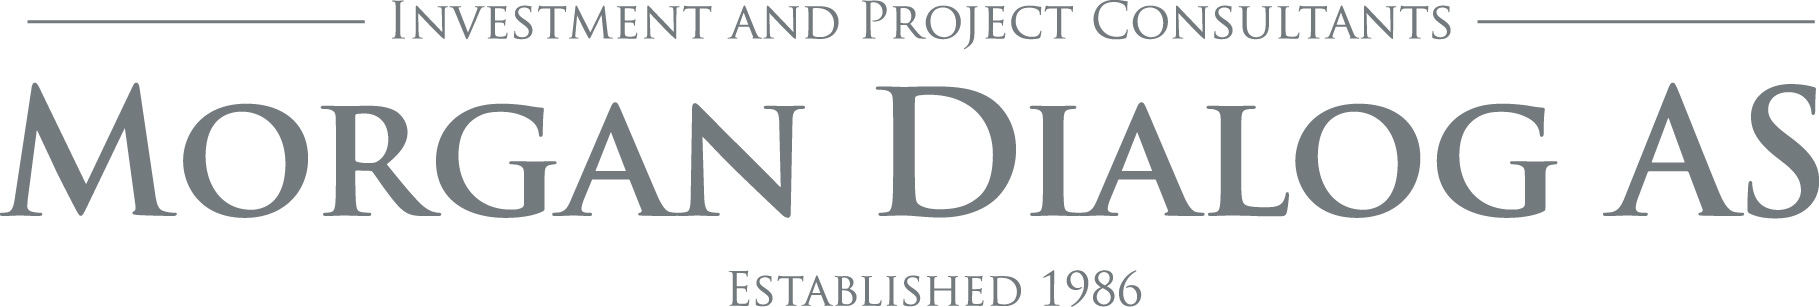 Morgan Dialogs logo